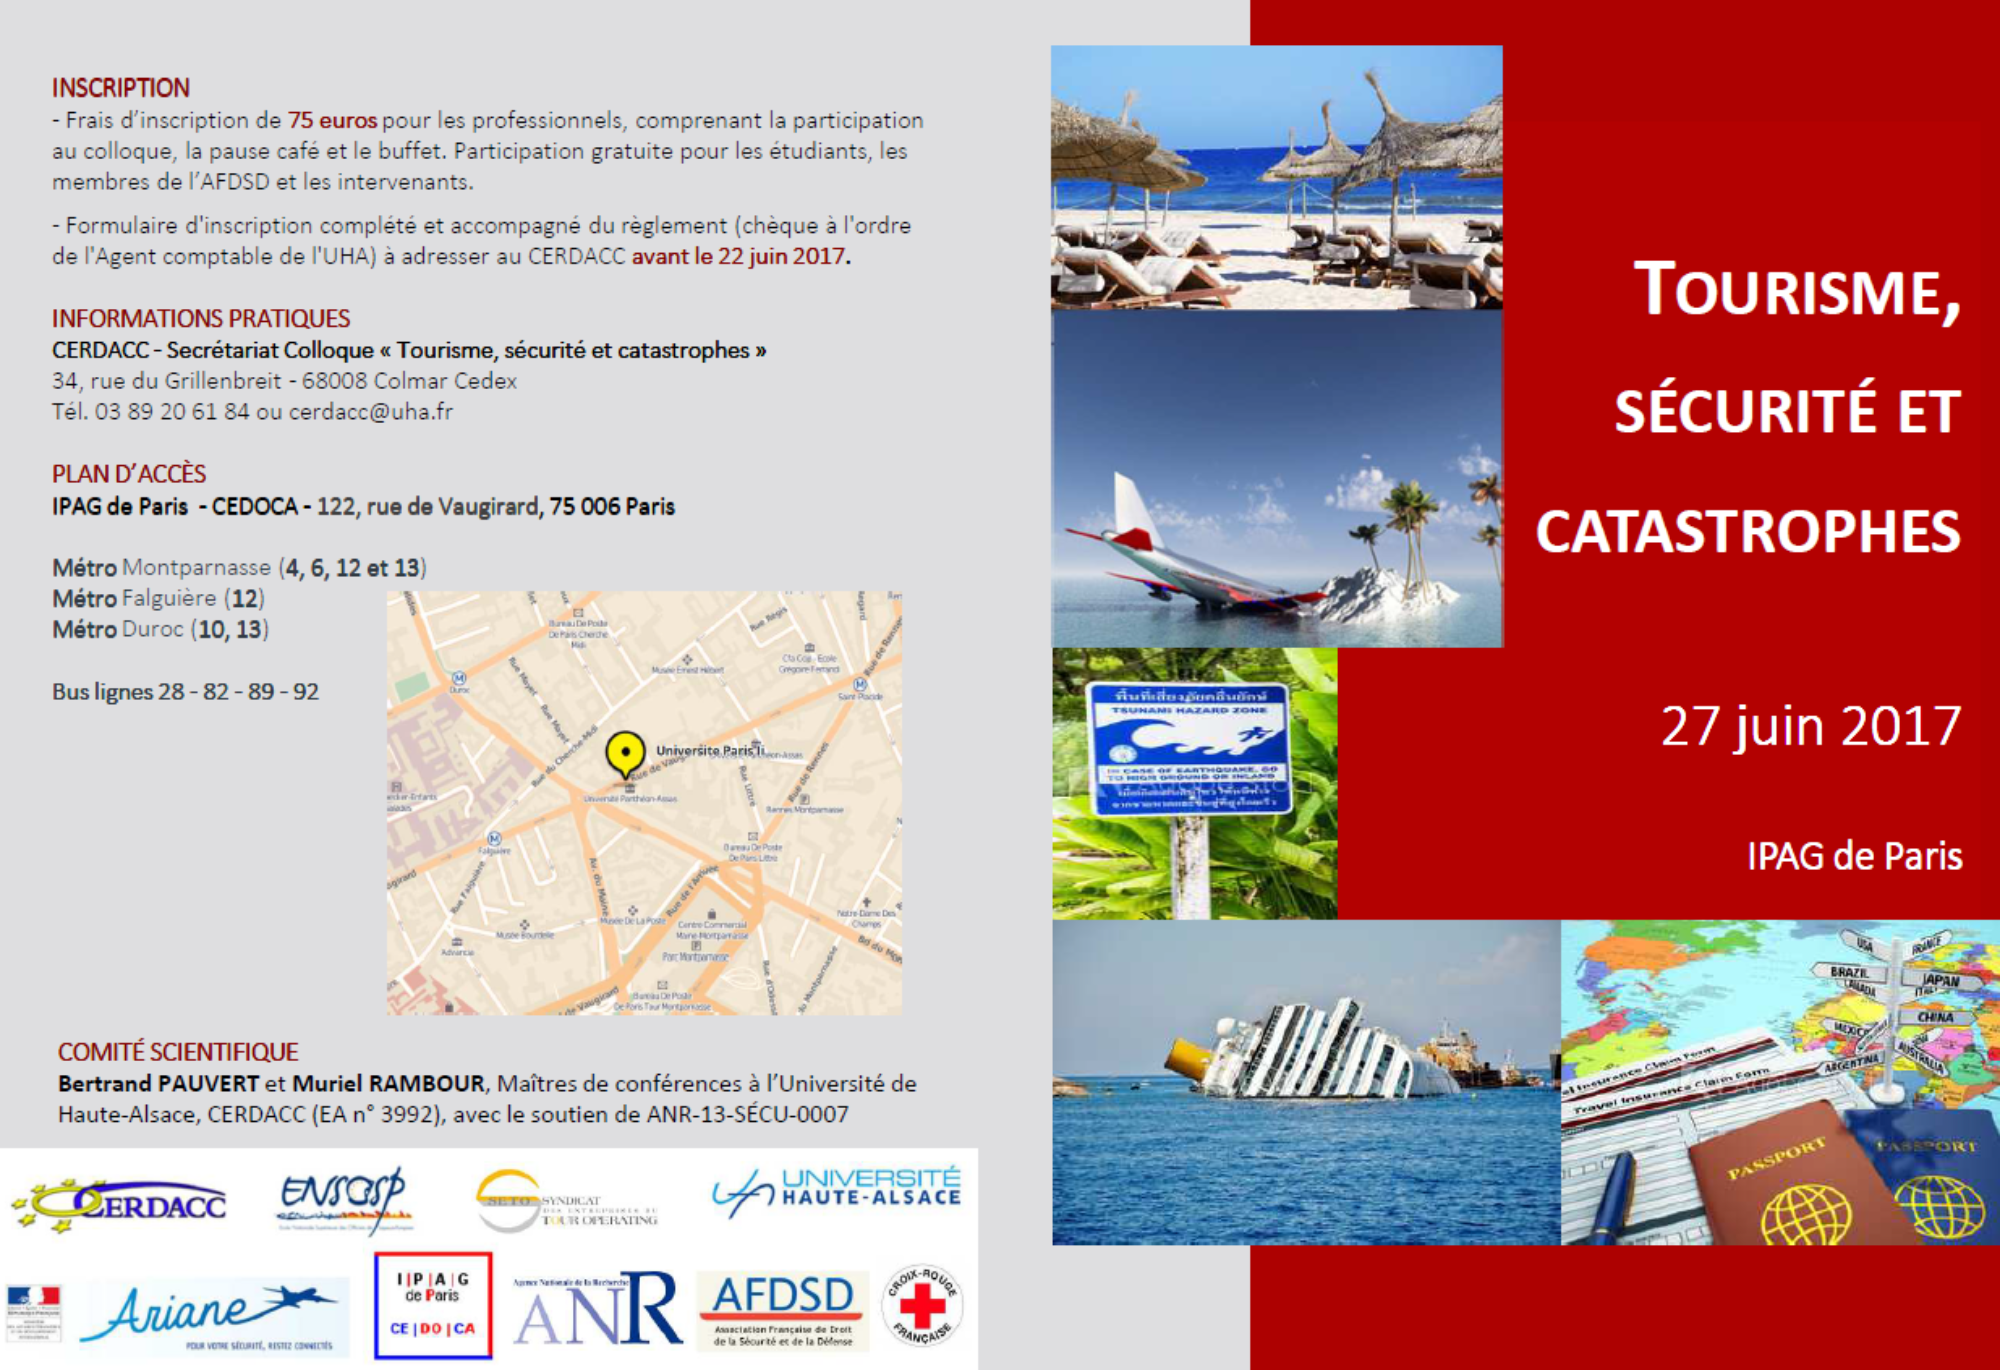 Colloque "Tourisme, sécurité et catastrophes" le 27 juin à Paris